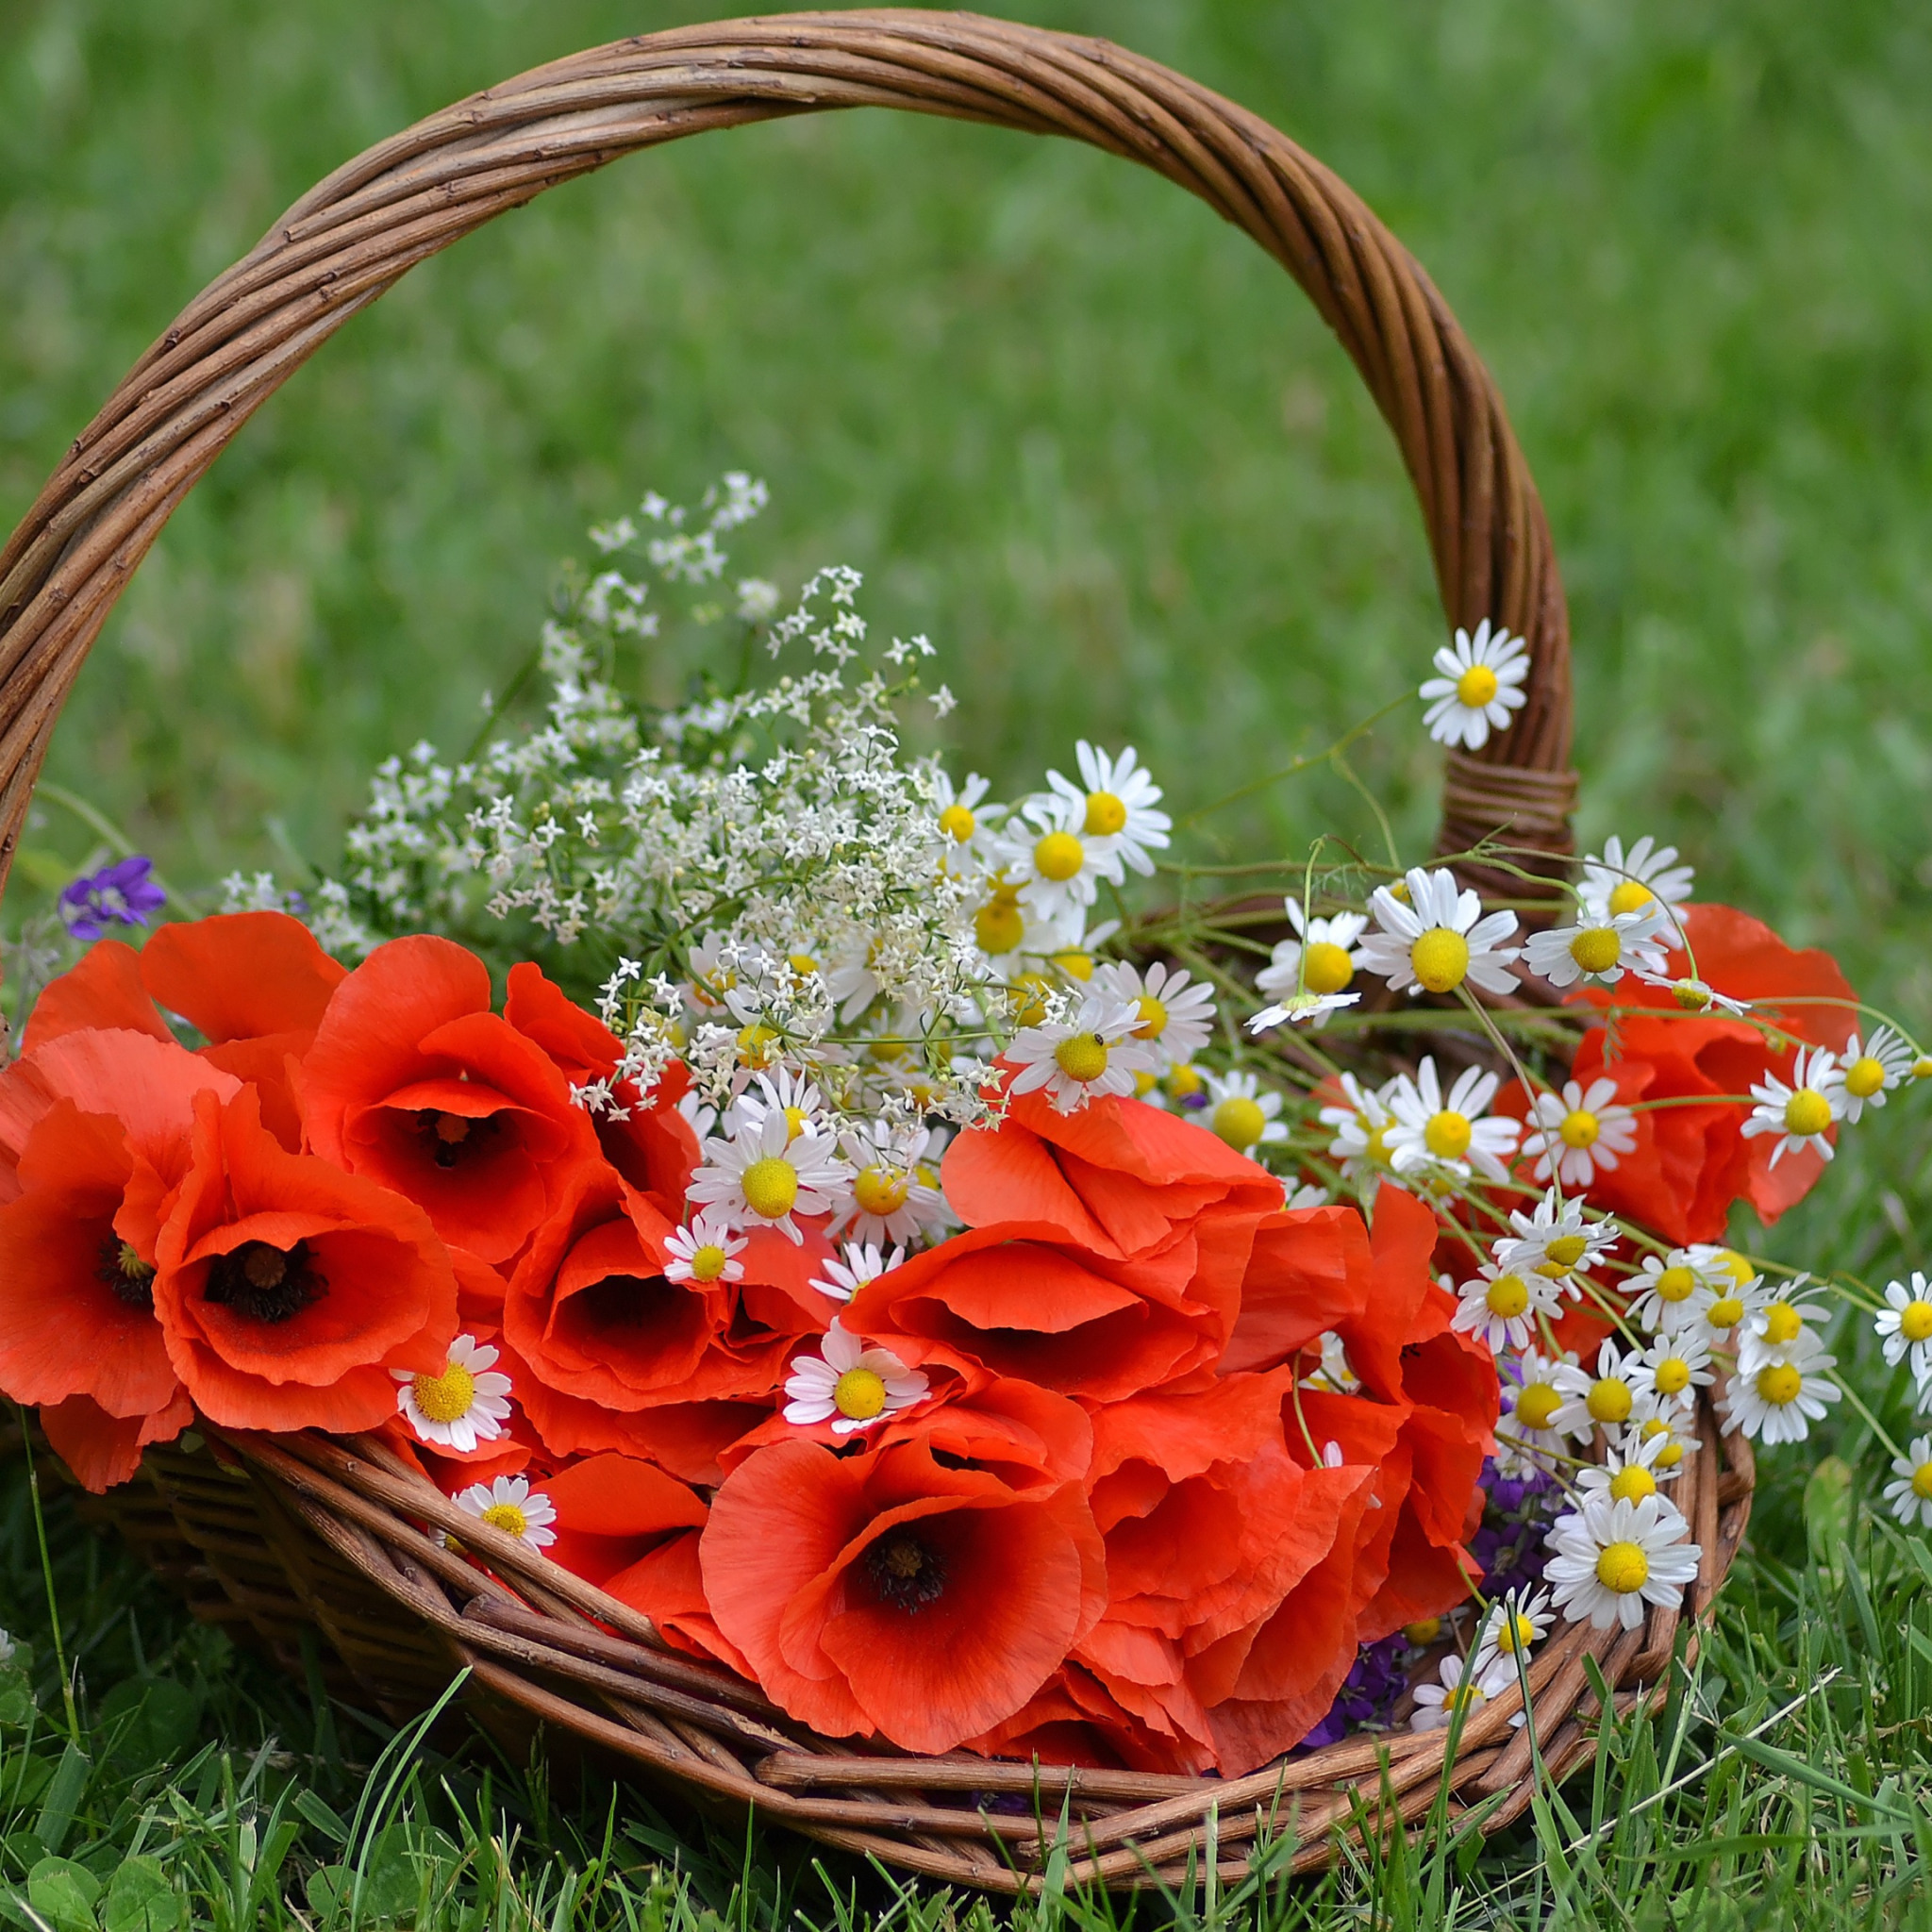 Букет цветов счастье